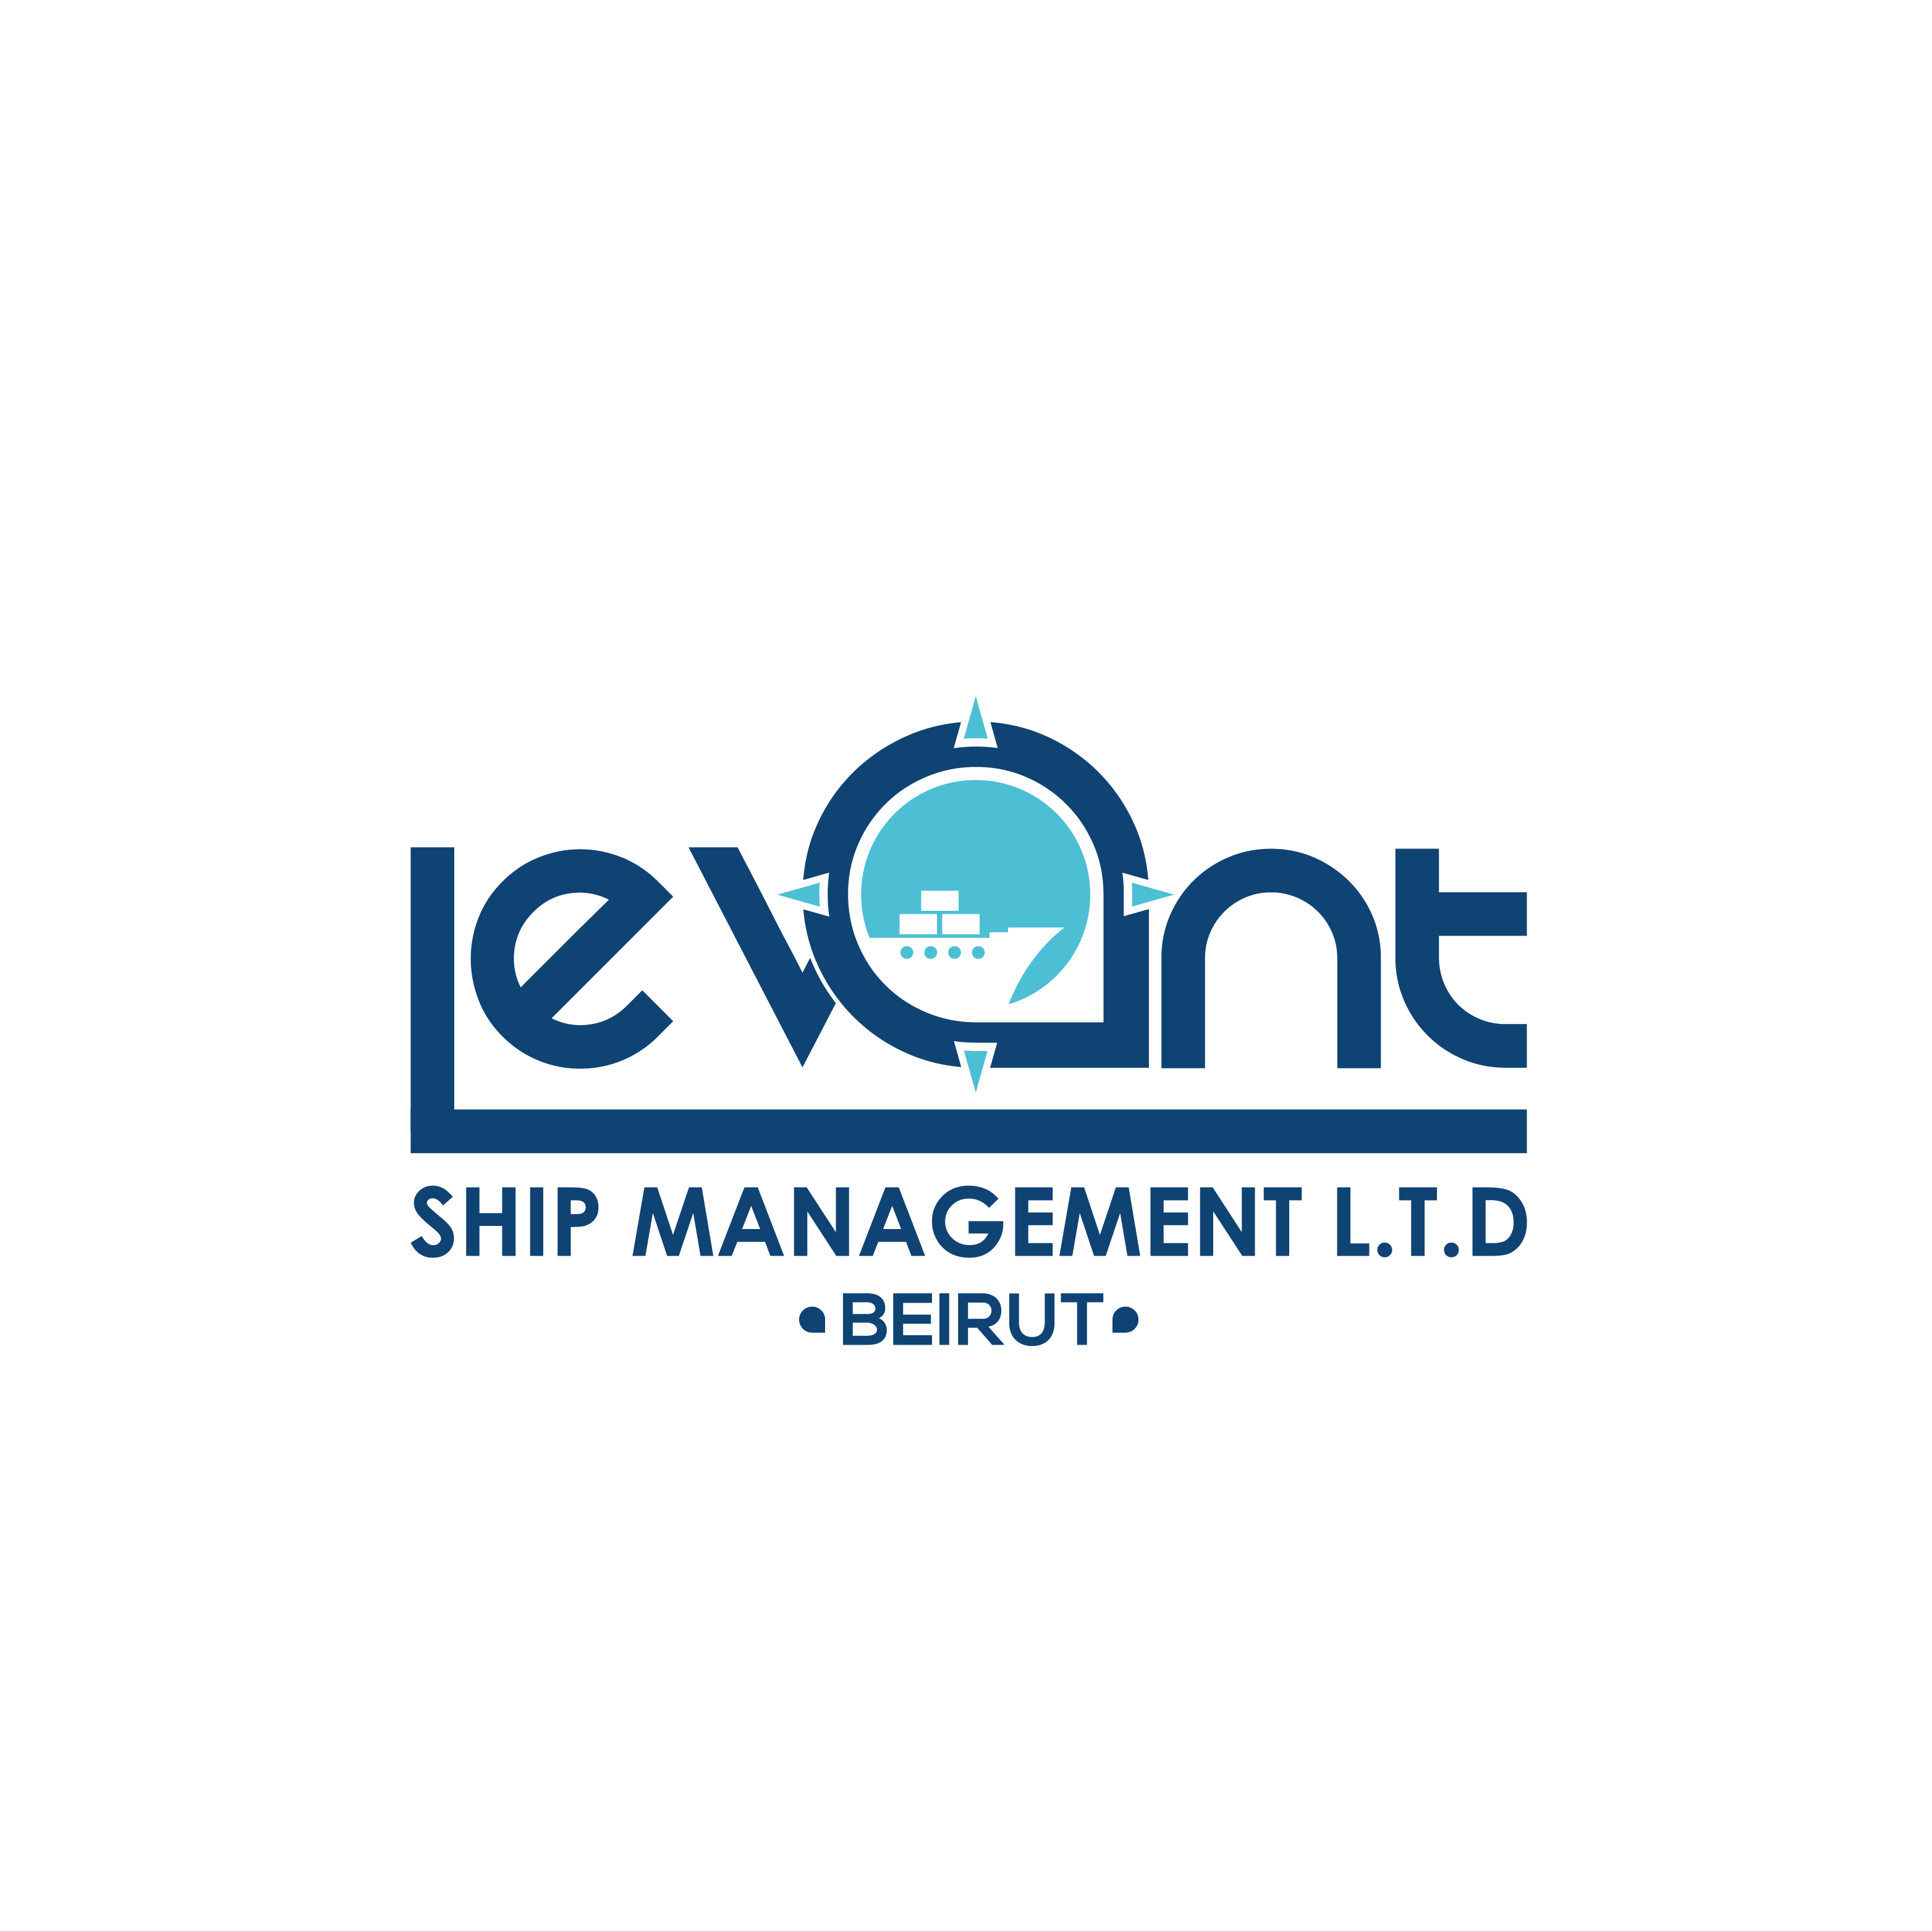 Levant Ship Management Ltd.